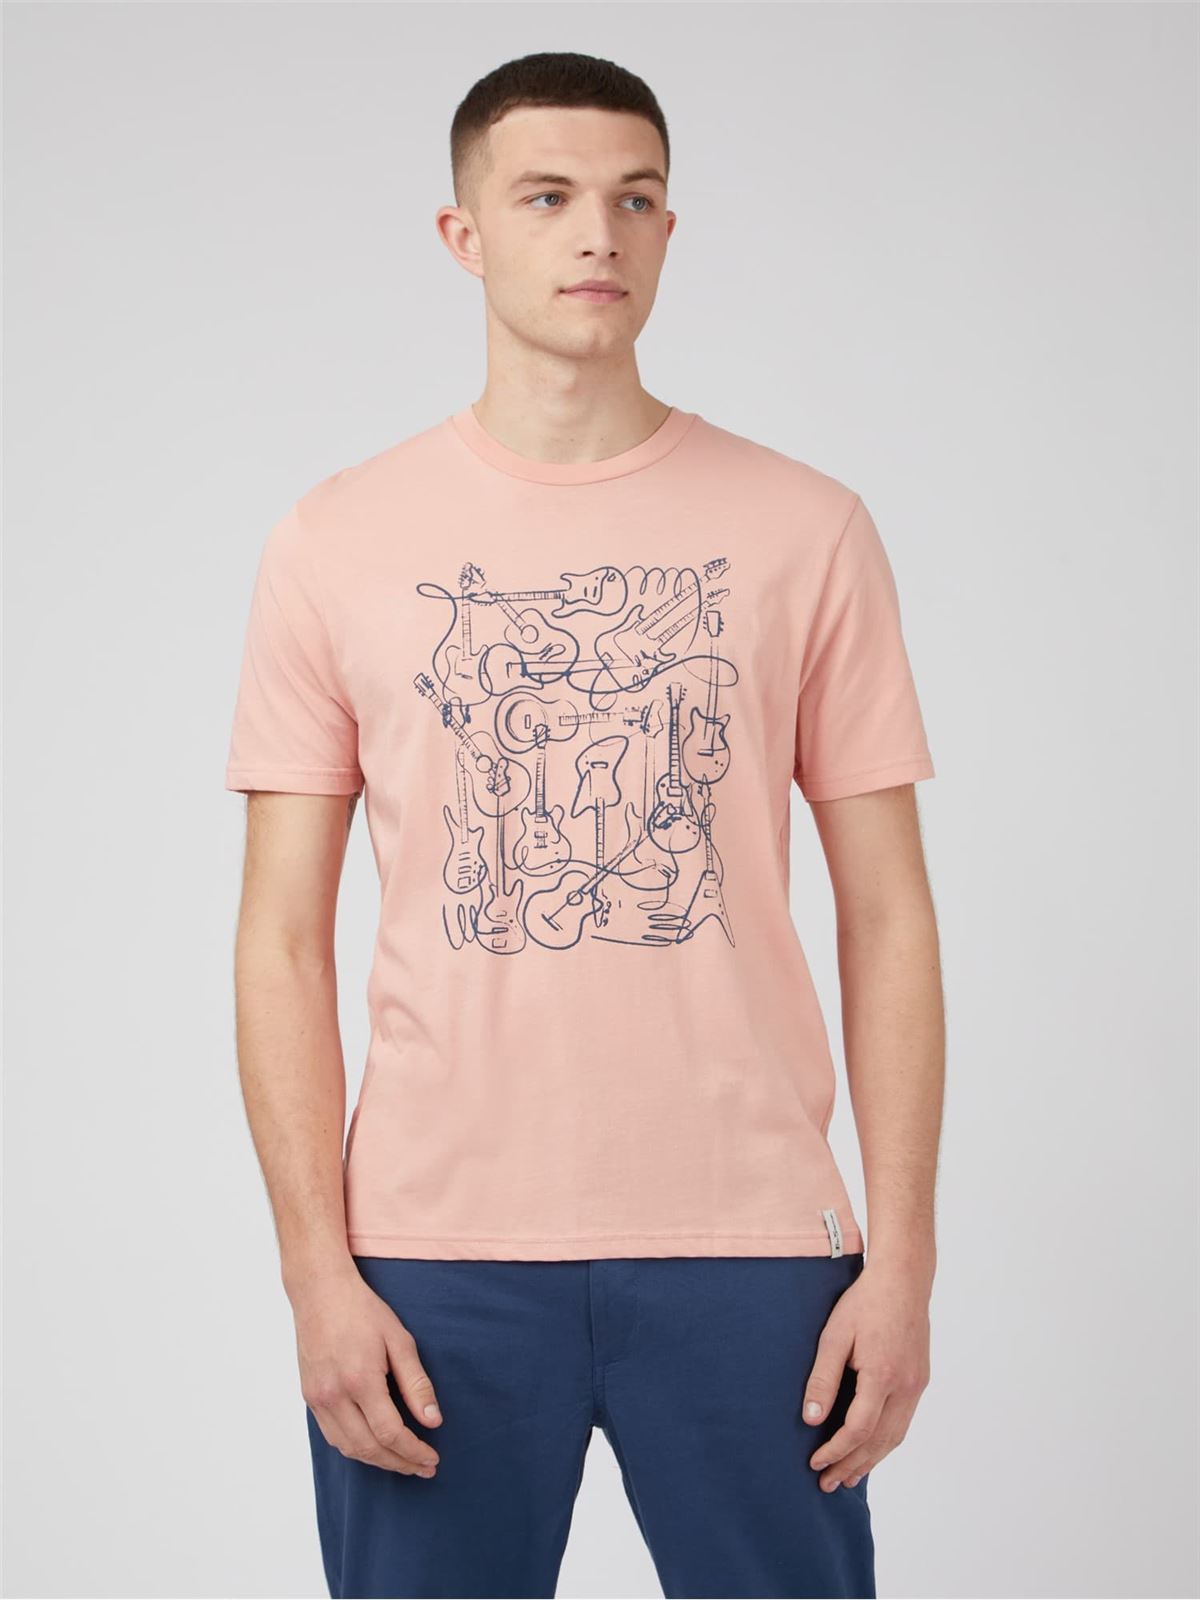 Camiseta Ben Sherman 0071378 501 music madness light pink - Imagen 1